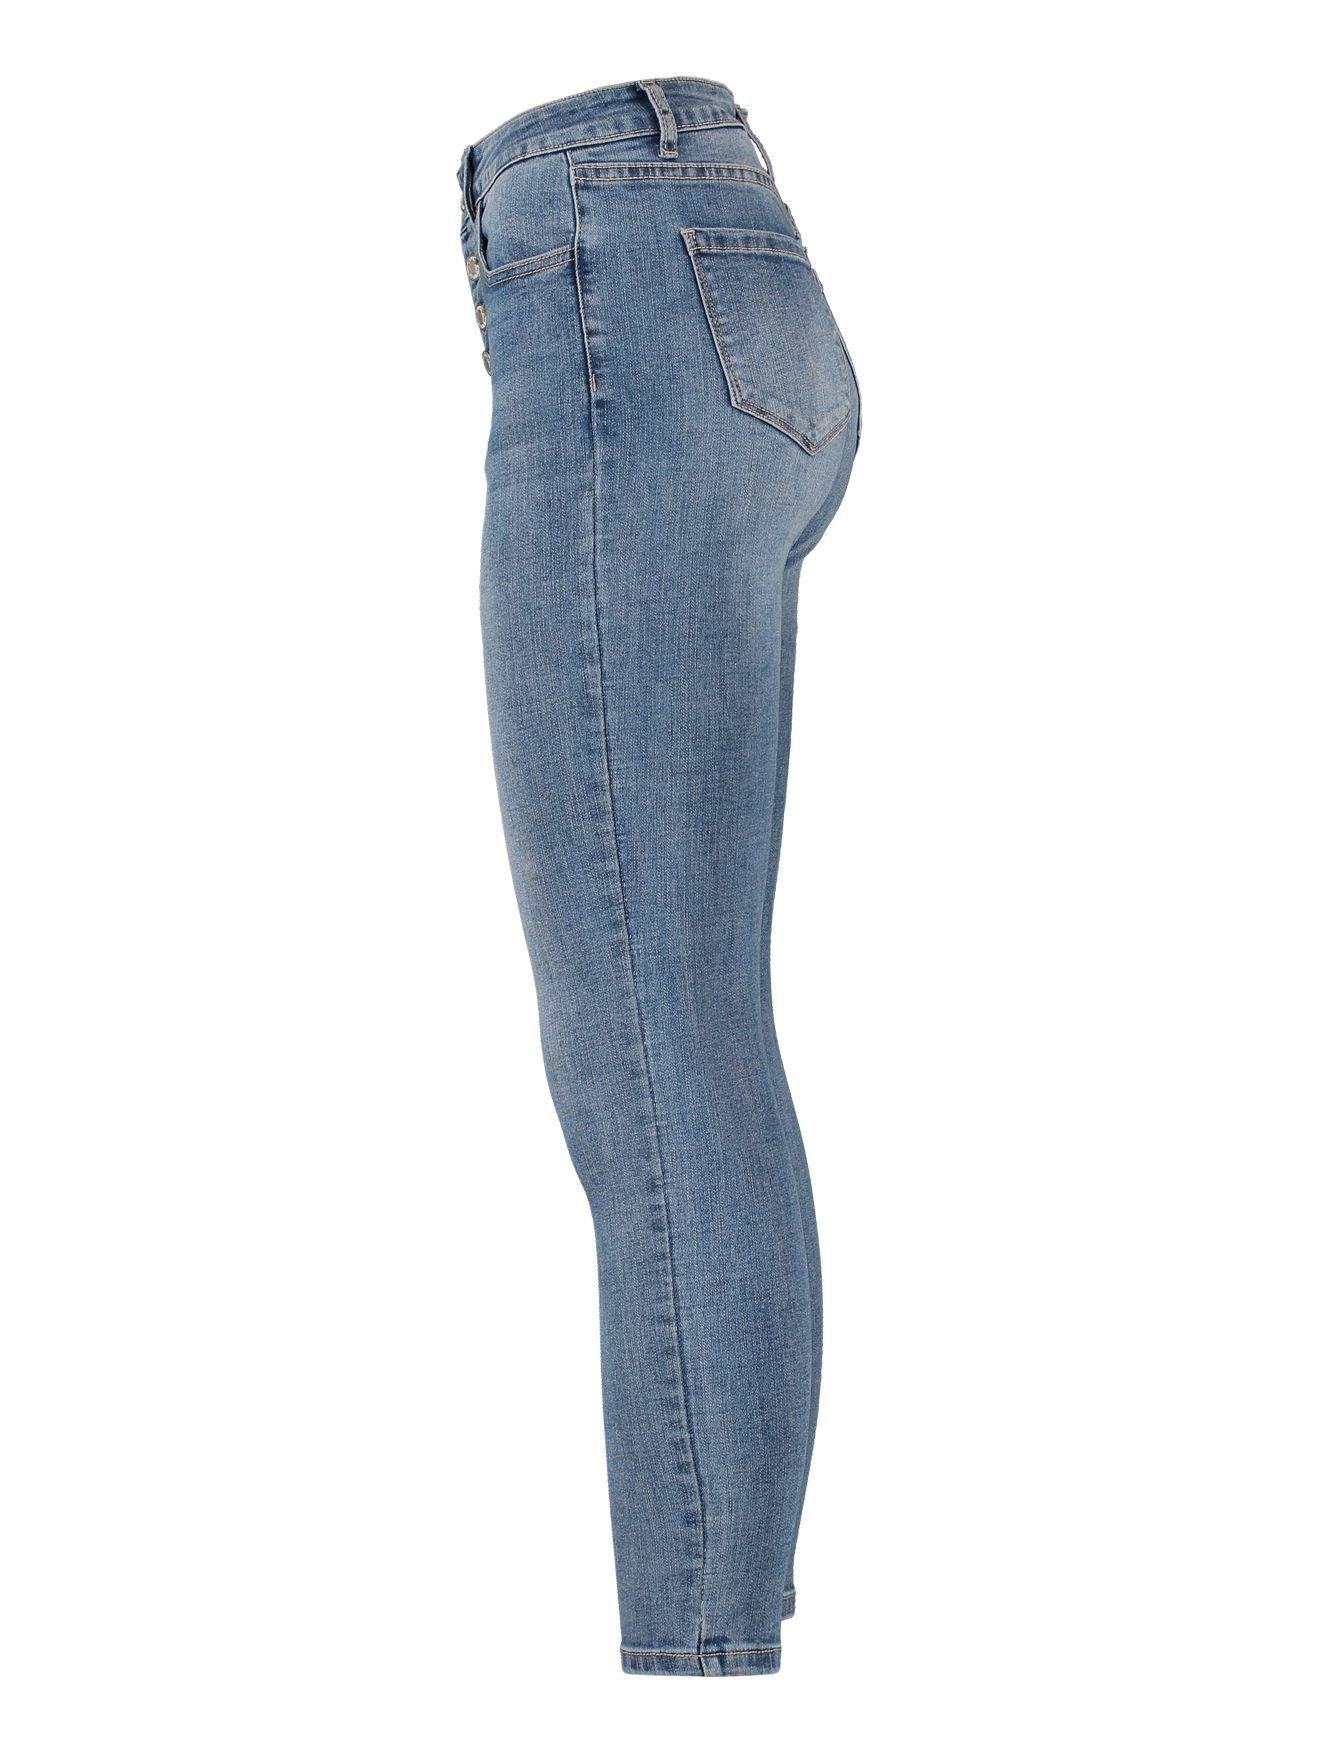 HaILYS 5-pocket jeans LG HW C JN Ki44ra